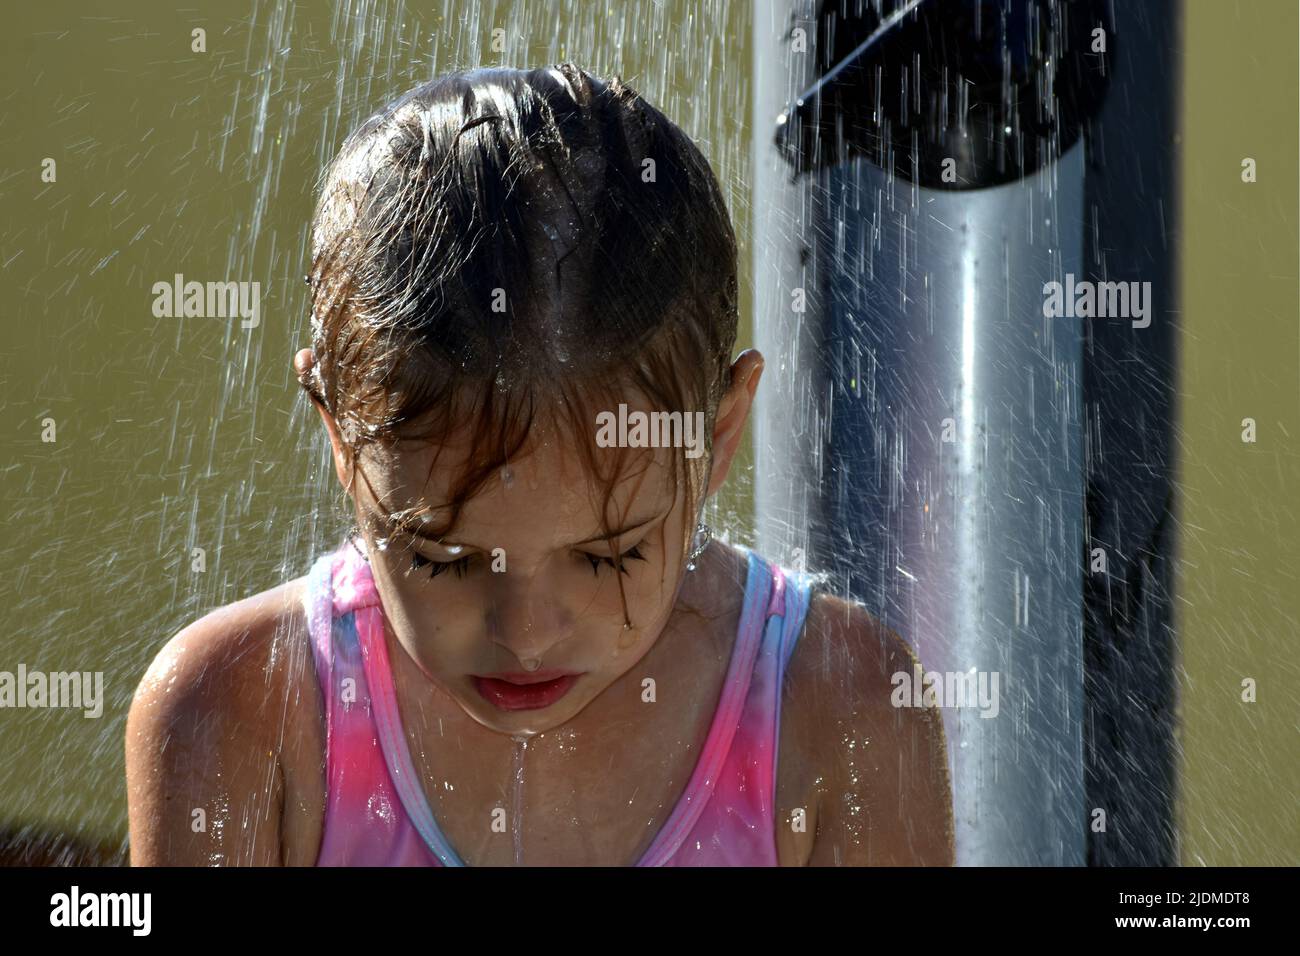 Das Kind kühlt sich während des heißen Wetters im Sommer unter einer Außendusche ab Stockfoto